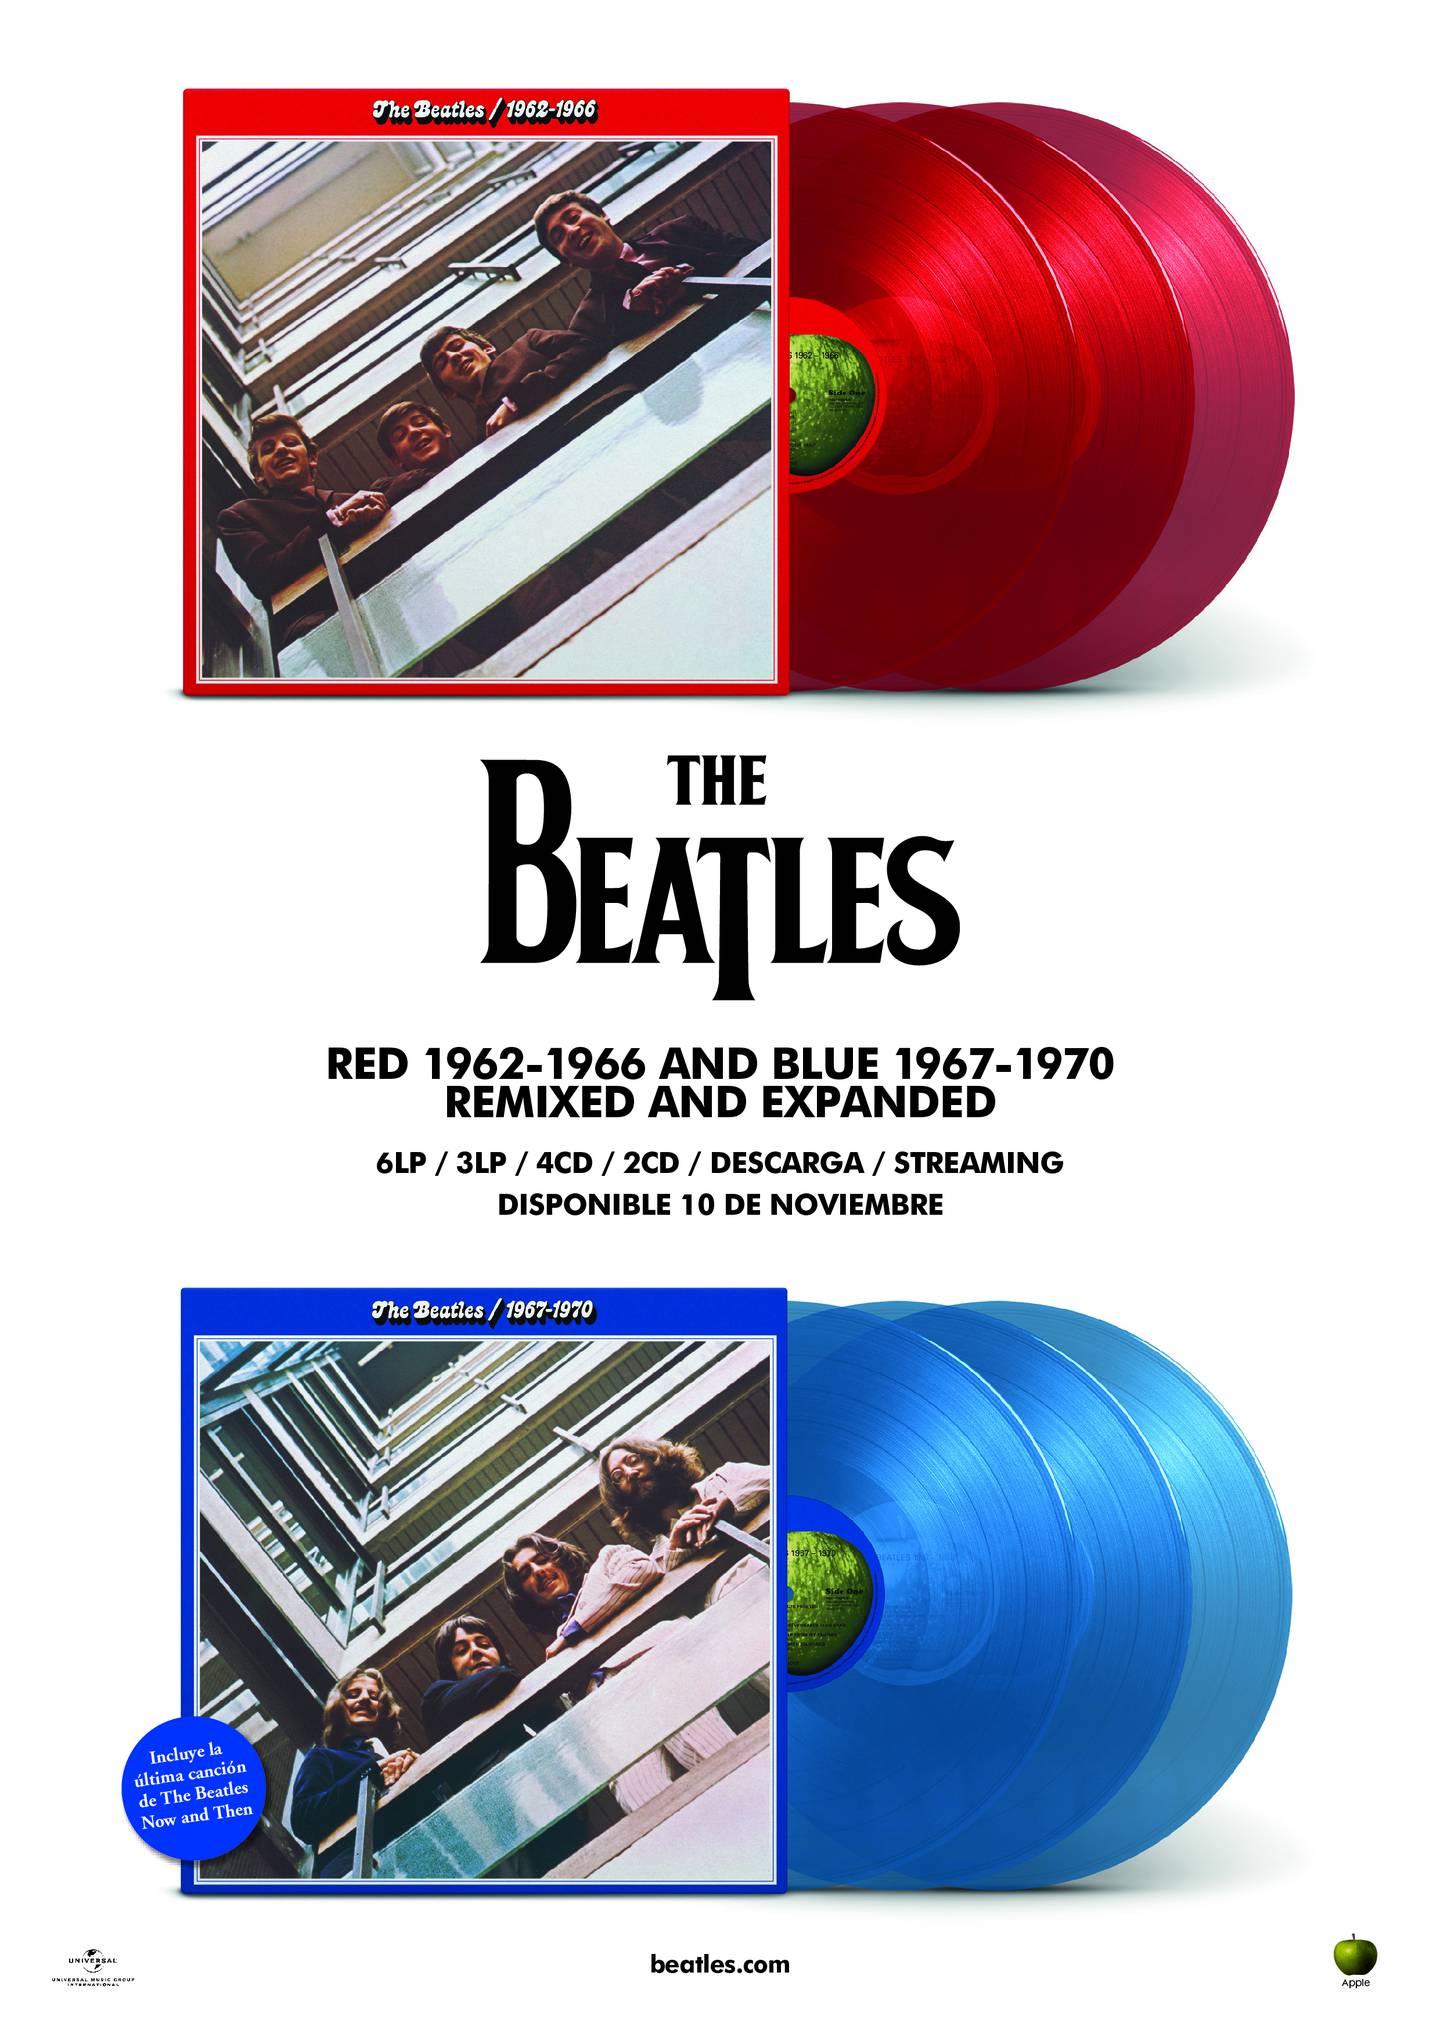 Discos Red y Blue de The Bealtes.  Imagen exclusiva de Viva hasta su publicación.